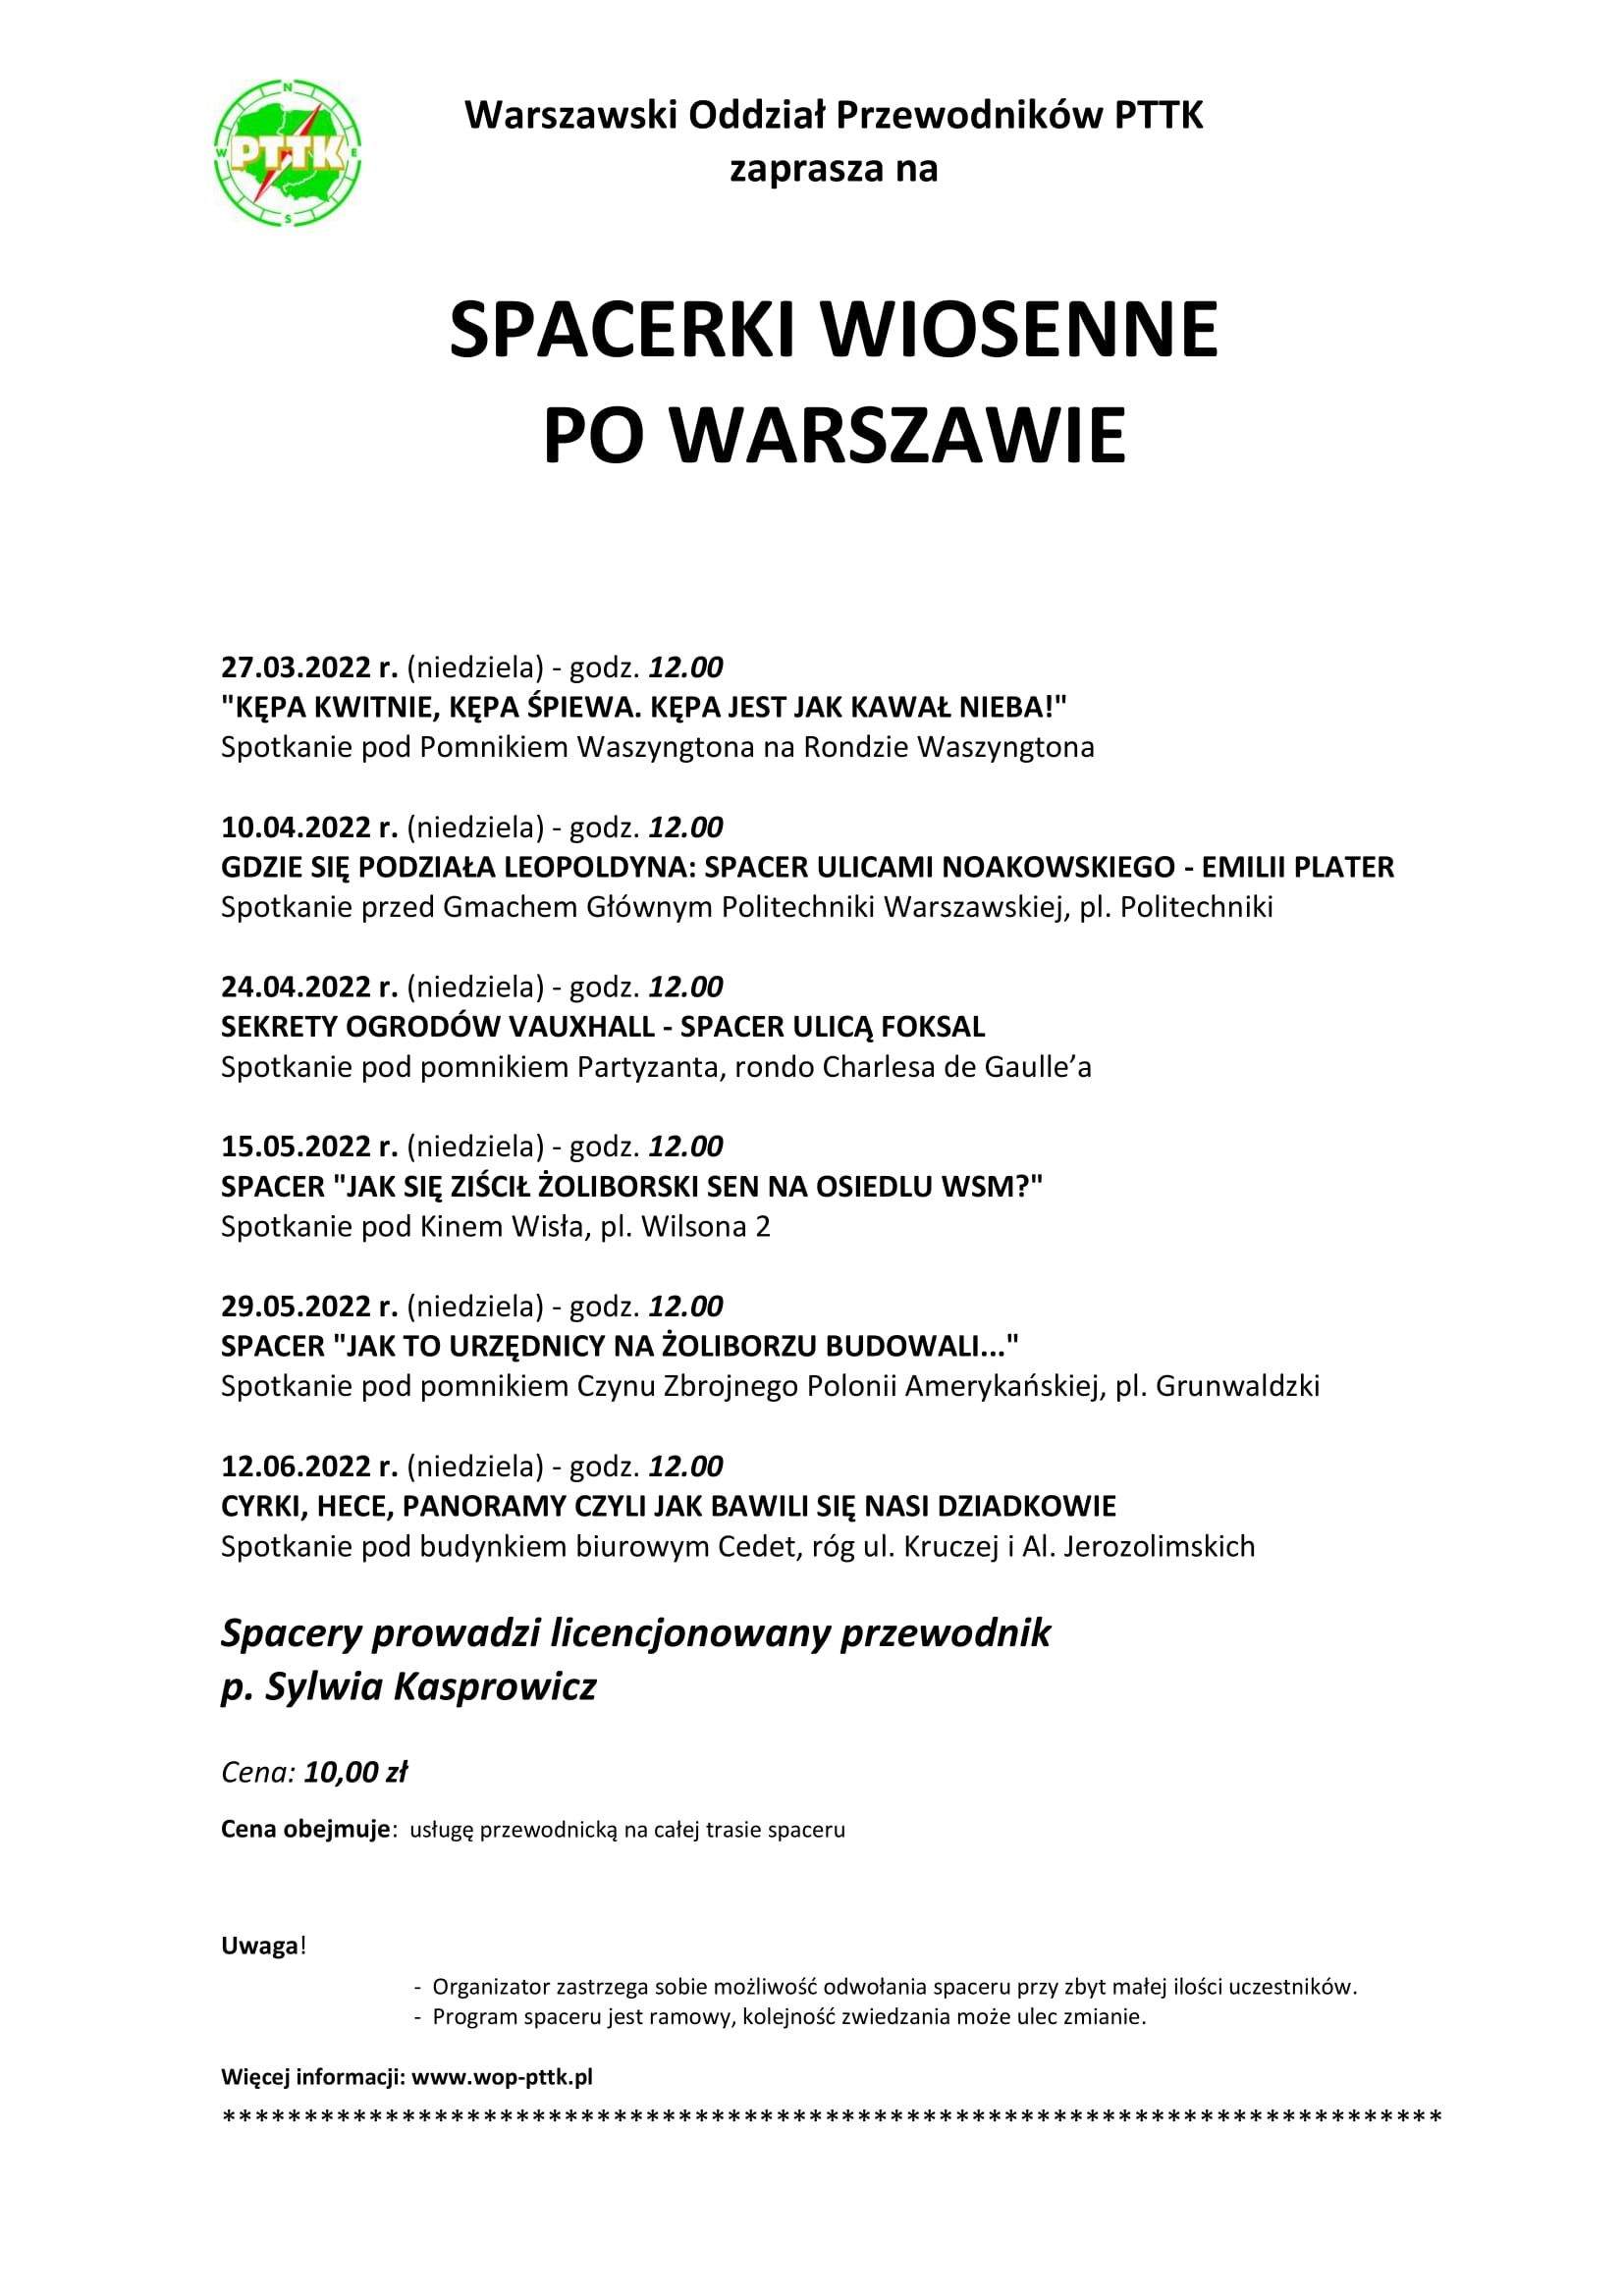 Wiosenne spacery po Warszawie z Sylwią Kasprowicz. Rozpoczynamy 27 marca 2022 r. (niedziela).